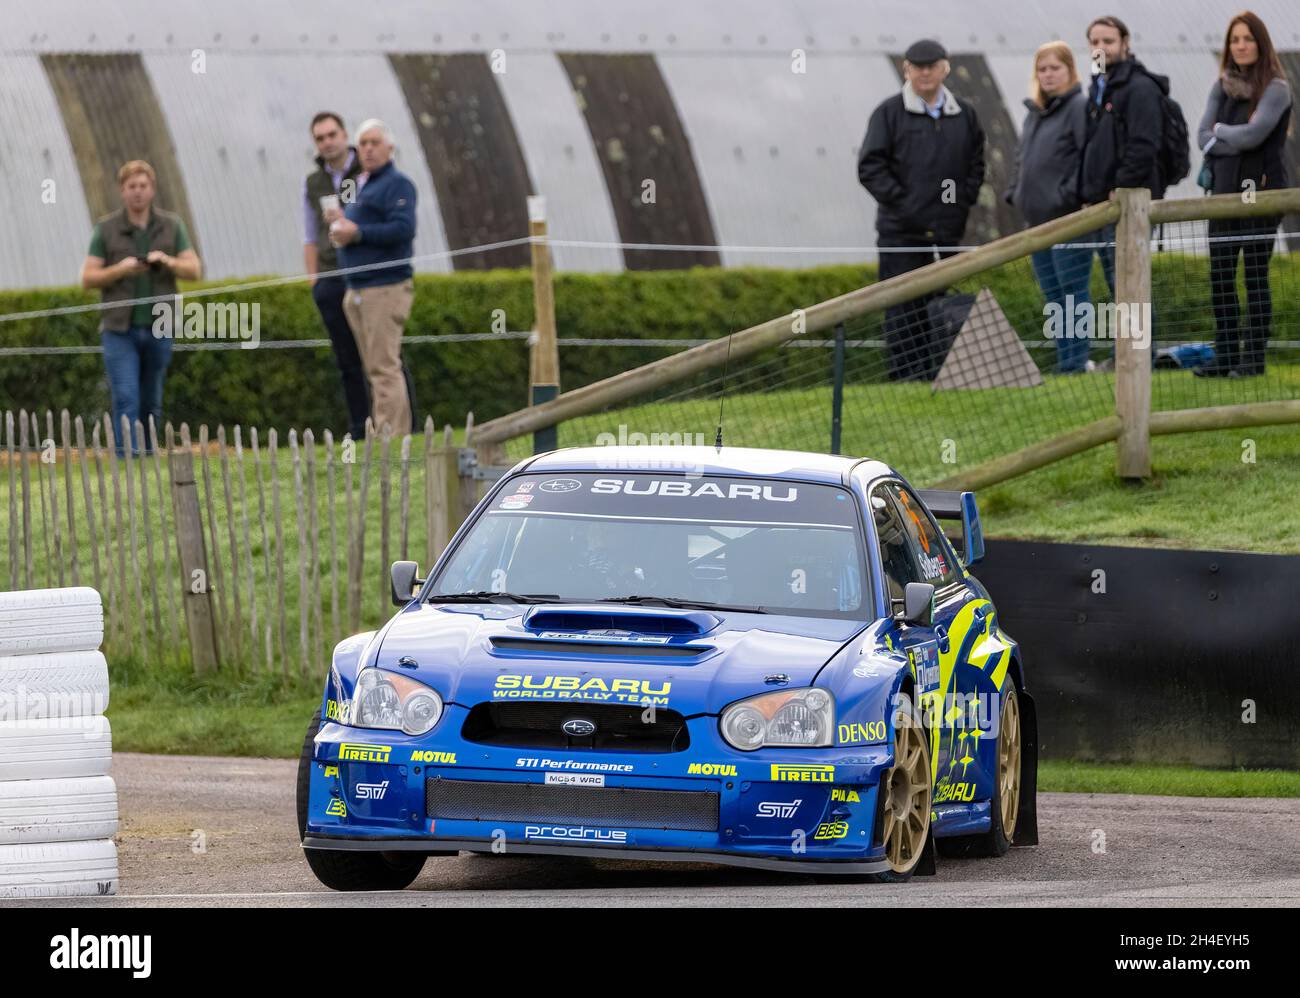 Subaru Impreza S11 WRC 05 mit Fahrer will Nicholls während der Super Special Stage beim Goodwood 78th Members Meeting, Sussex, Großbritannien. Stockfoto